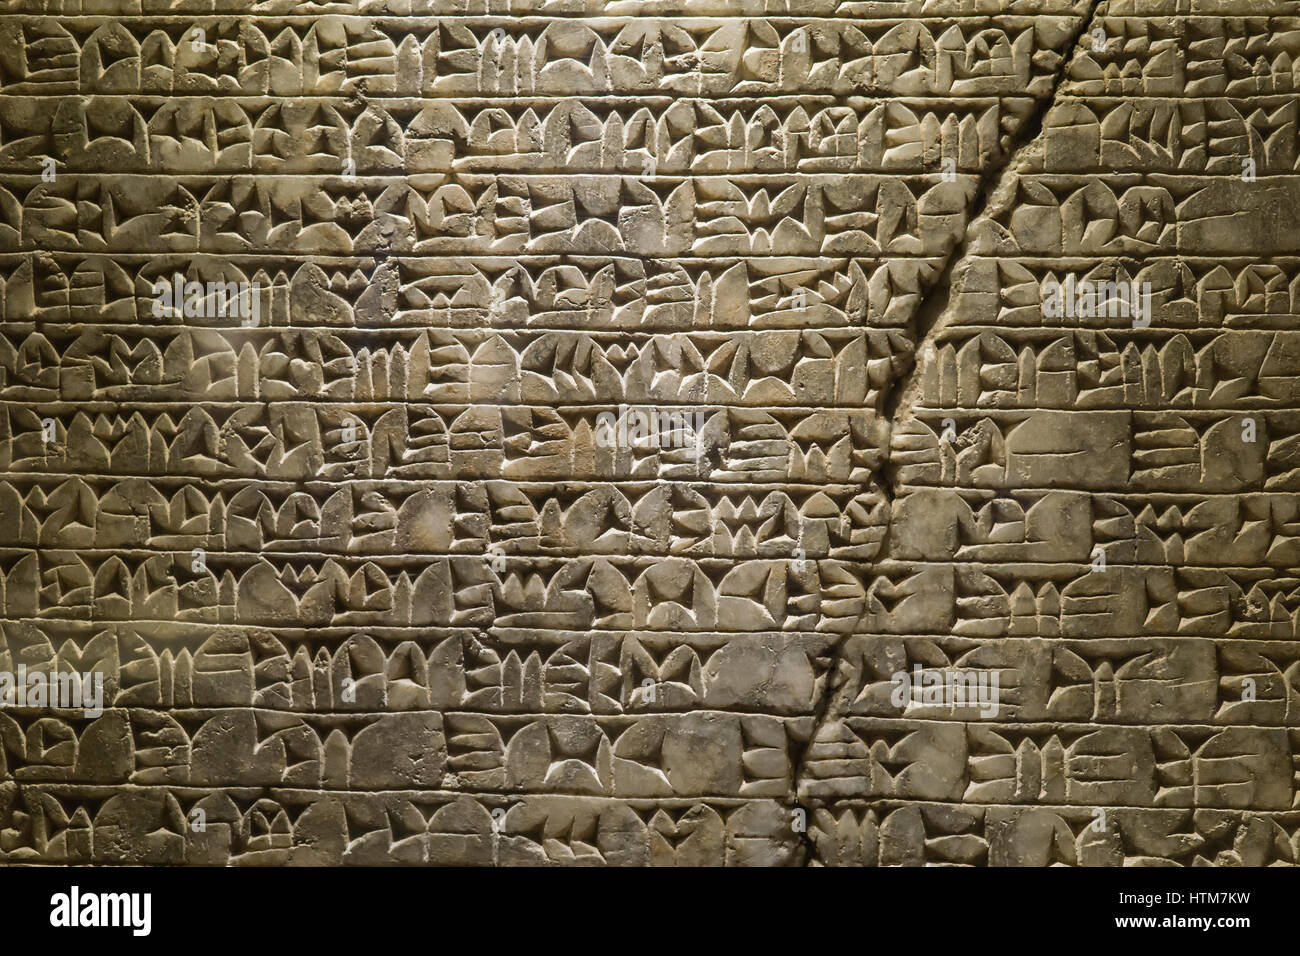 Rilievi assiri presso il Museo del Vaticano, iscrizione di Sargon II(721-705 b.c.) fron la corte interna del palazzo di sargon a khorsabad,neo-periodo assiro. Foto Stock